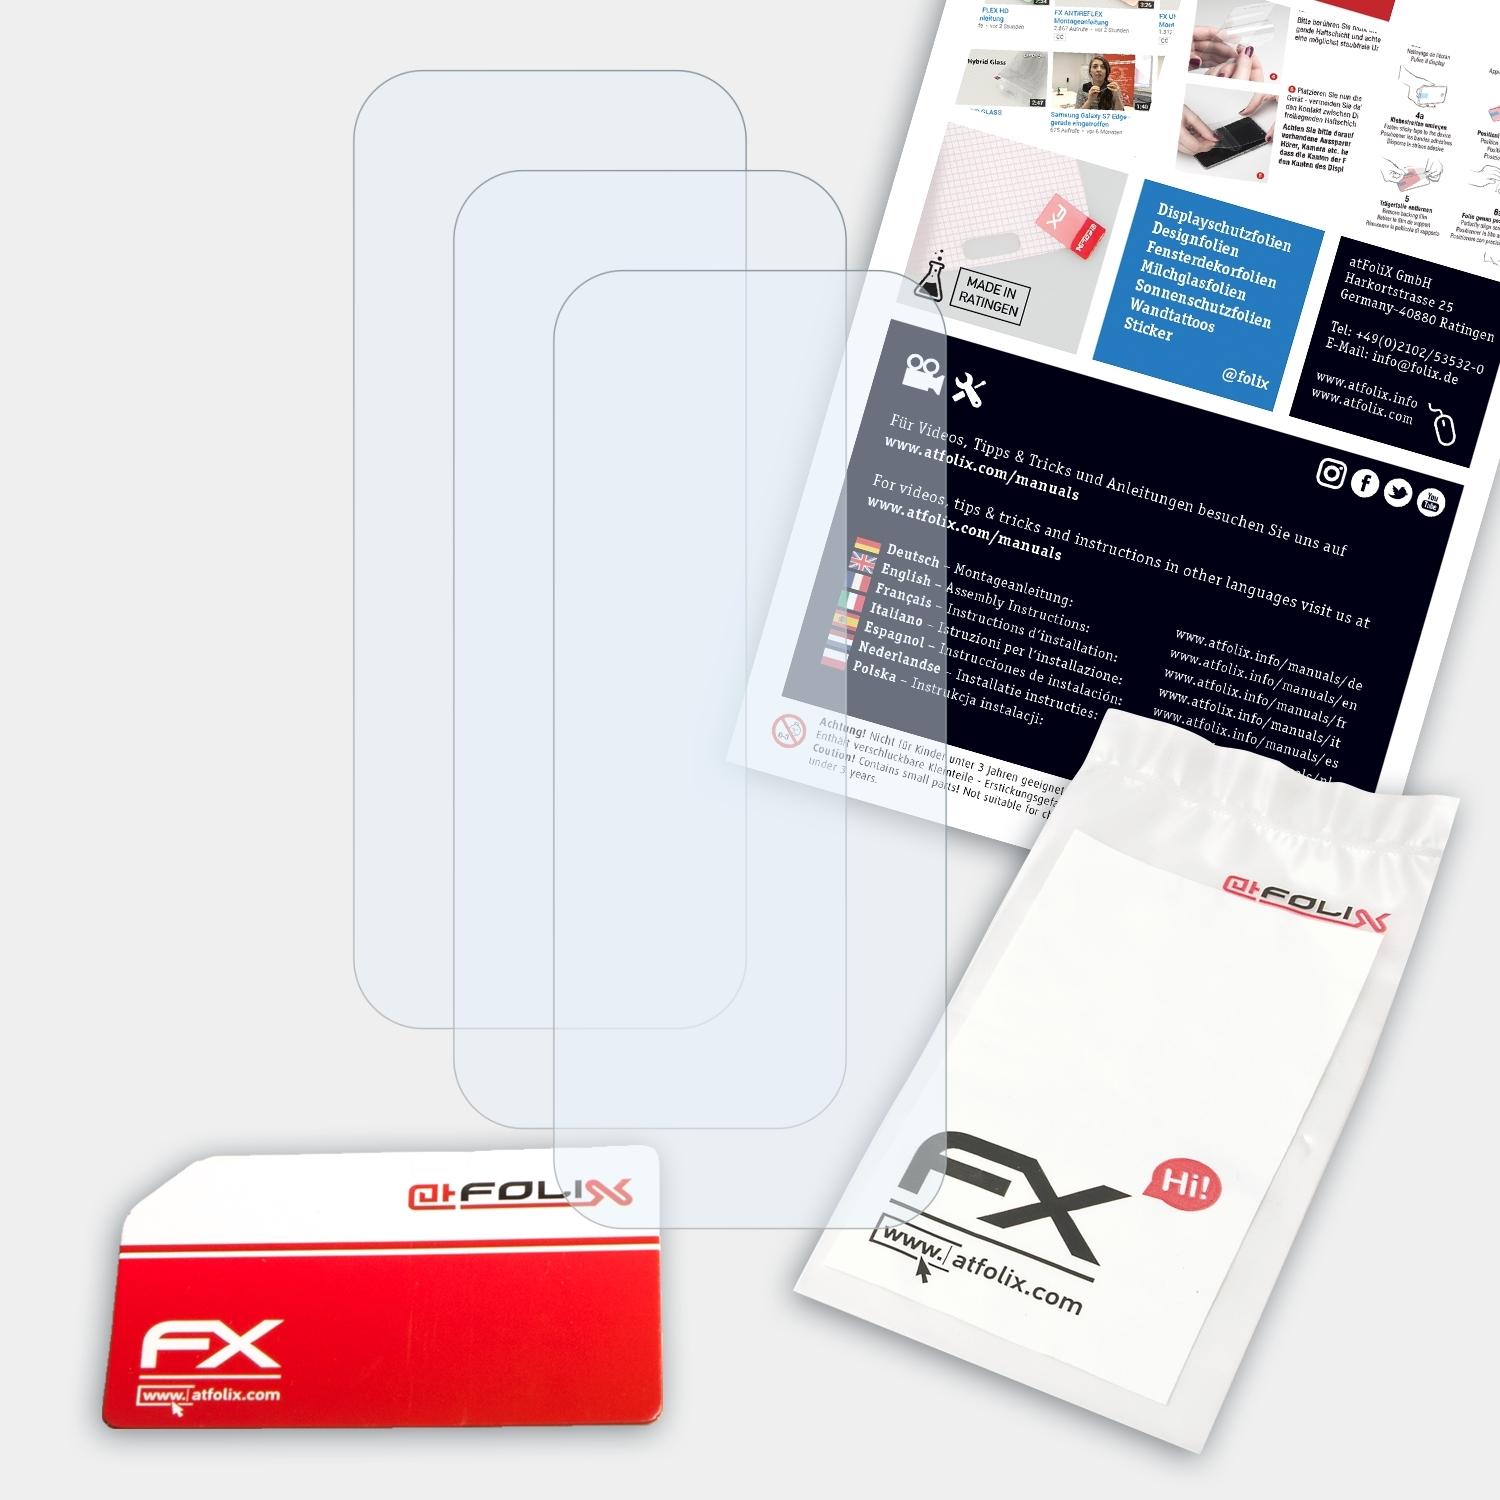 ATFOLIX 3x FX-Clear Displayschutz(für Vivo Y12s Lens (2021))